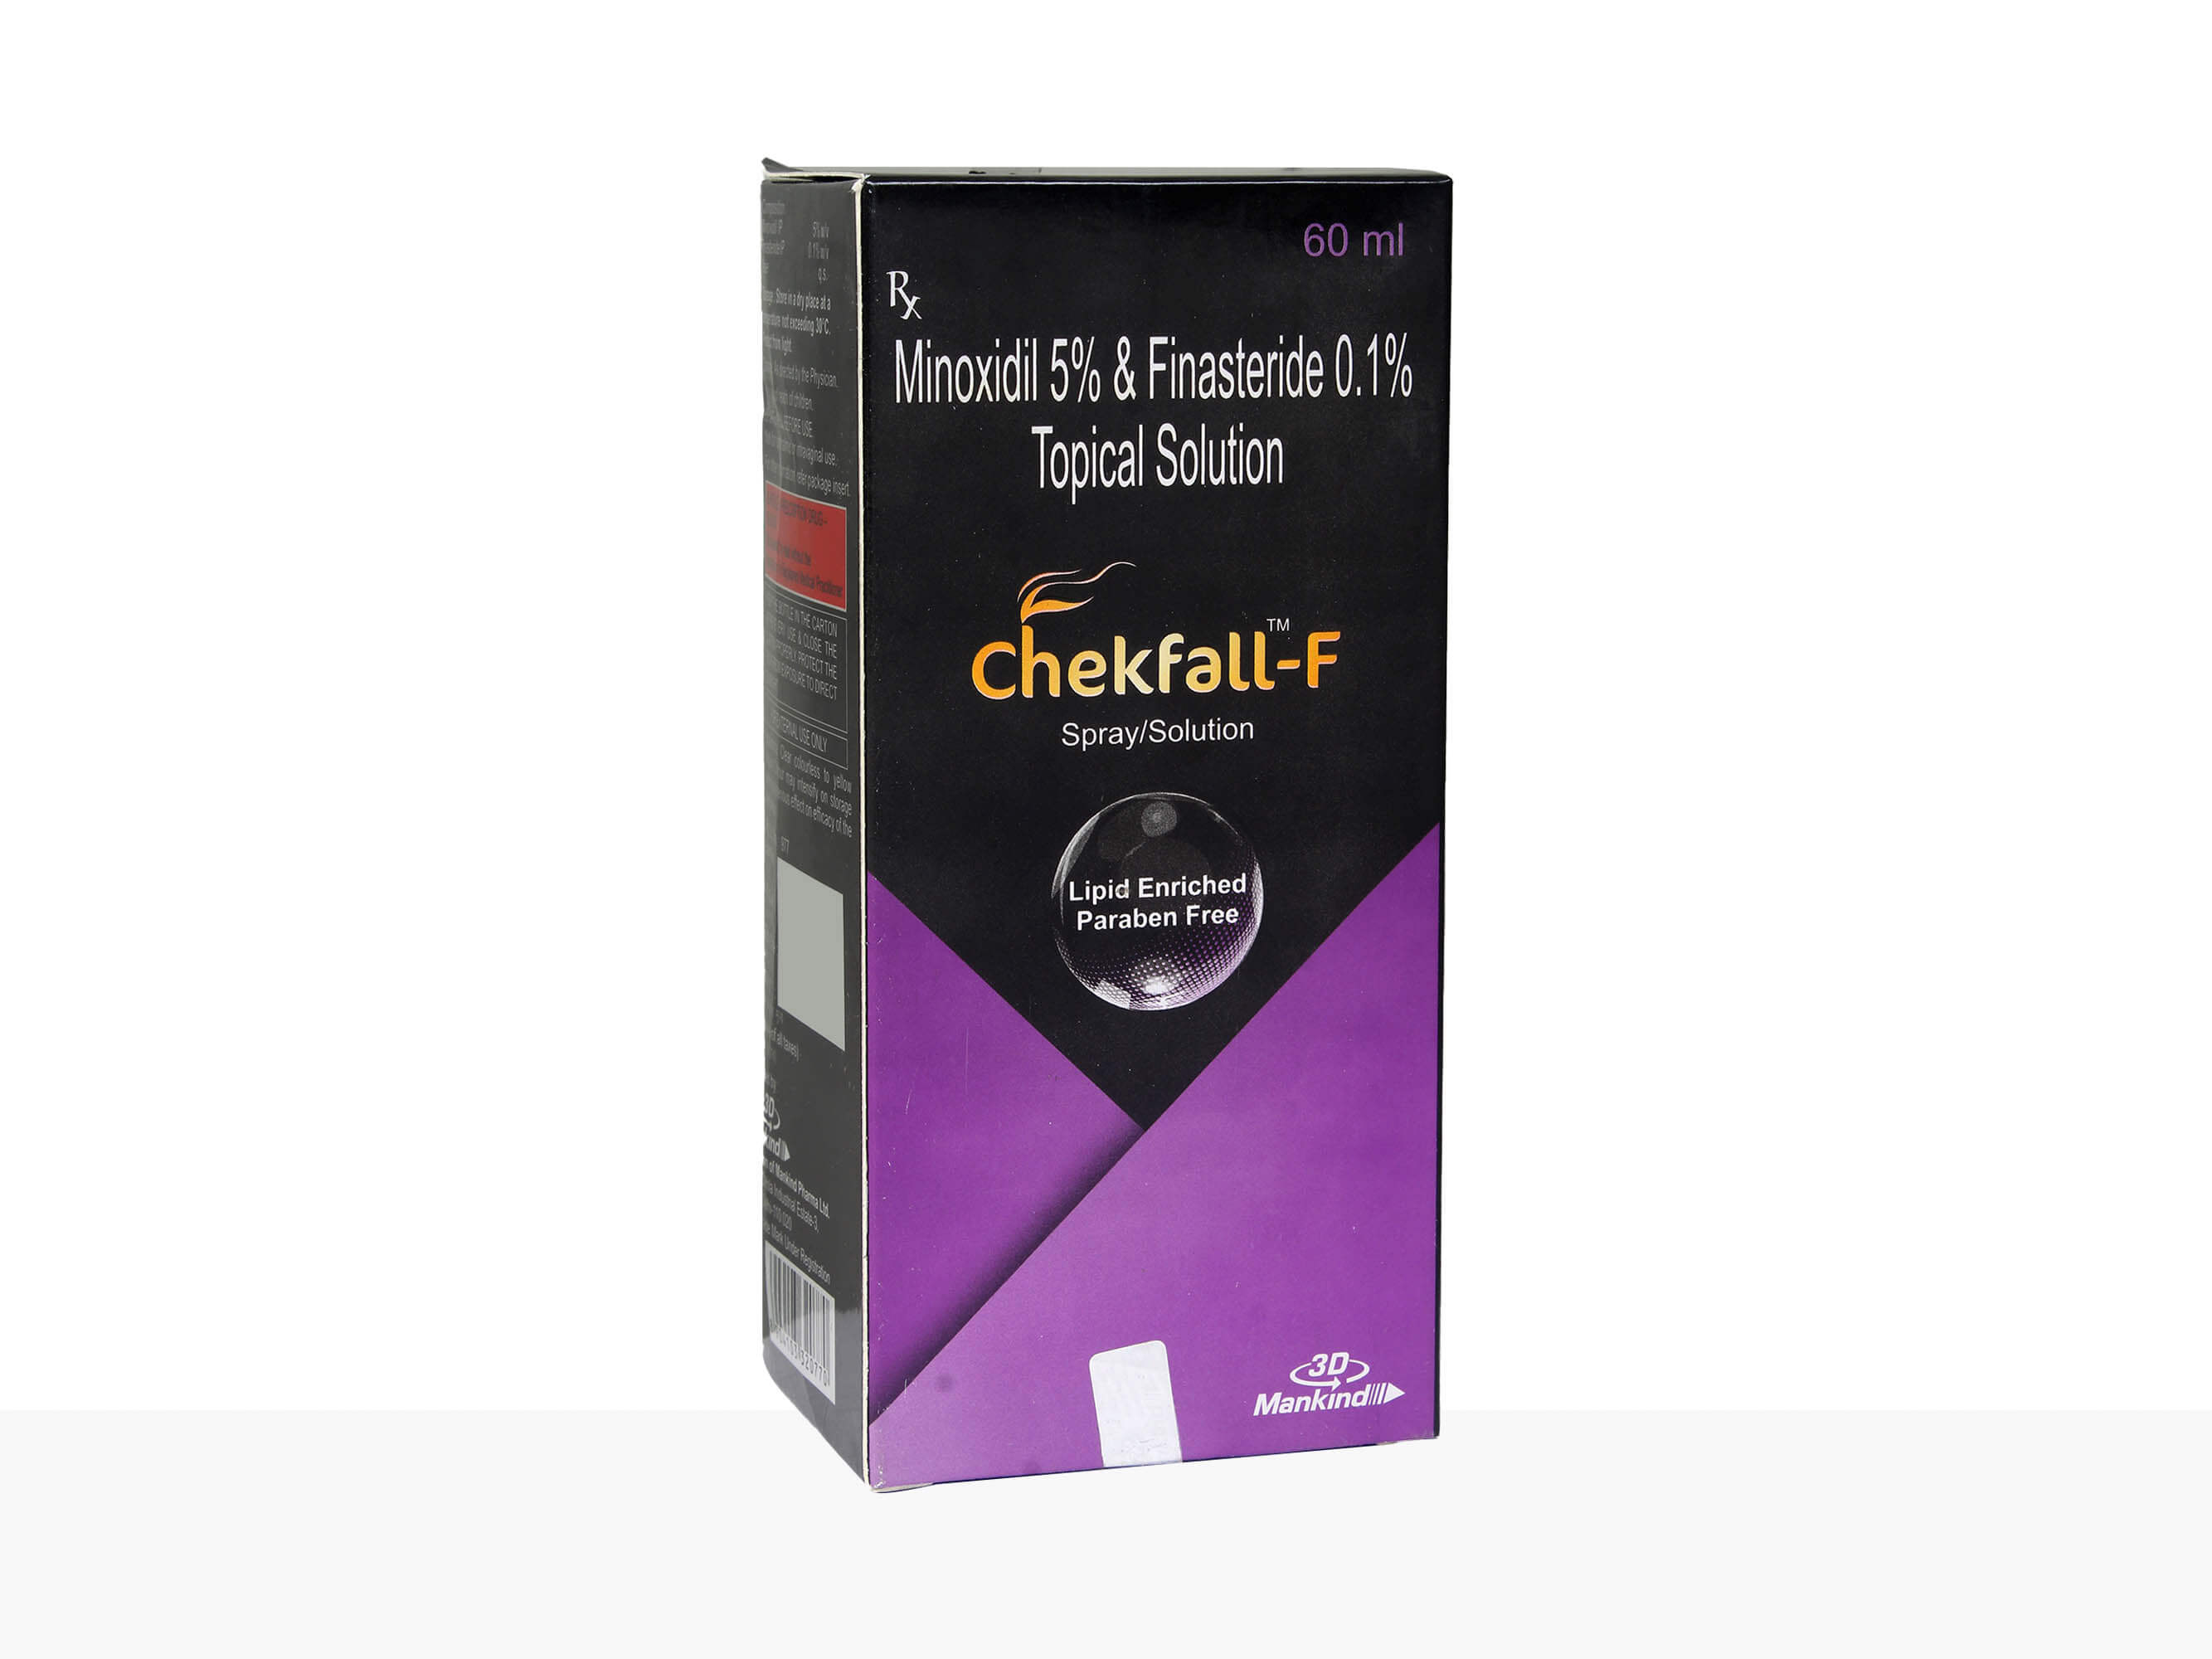 Chekfall-F Topical 5% Solution - Clinikally